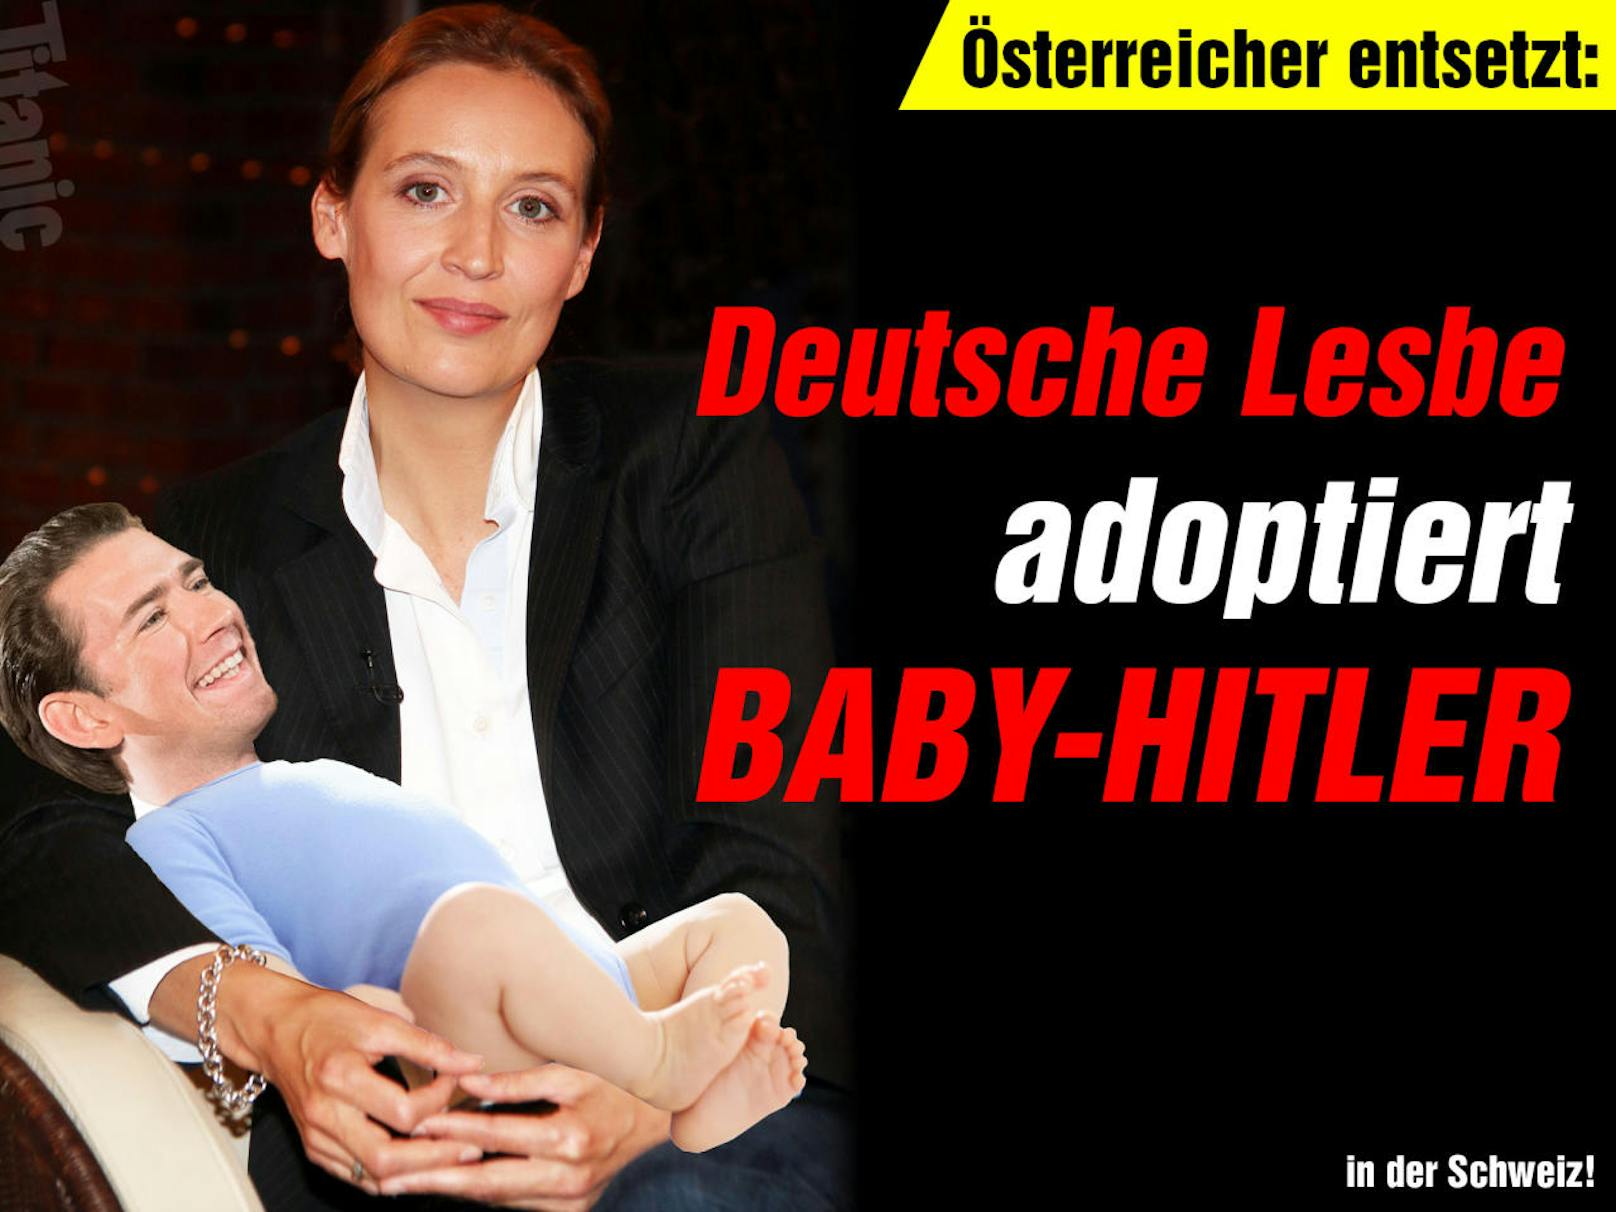 Das Satiremagazin "Titanic" zeigt "Baby-Hitler" in den Armen der lesbischen AfD-Politikerin Alice Weidel.